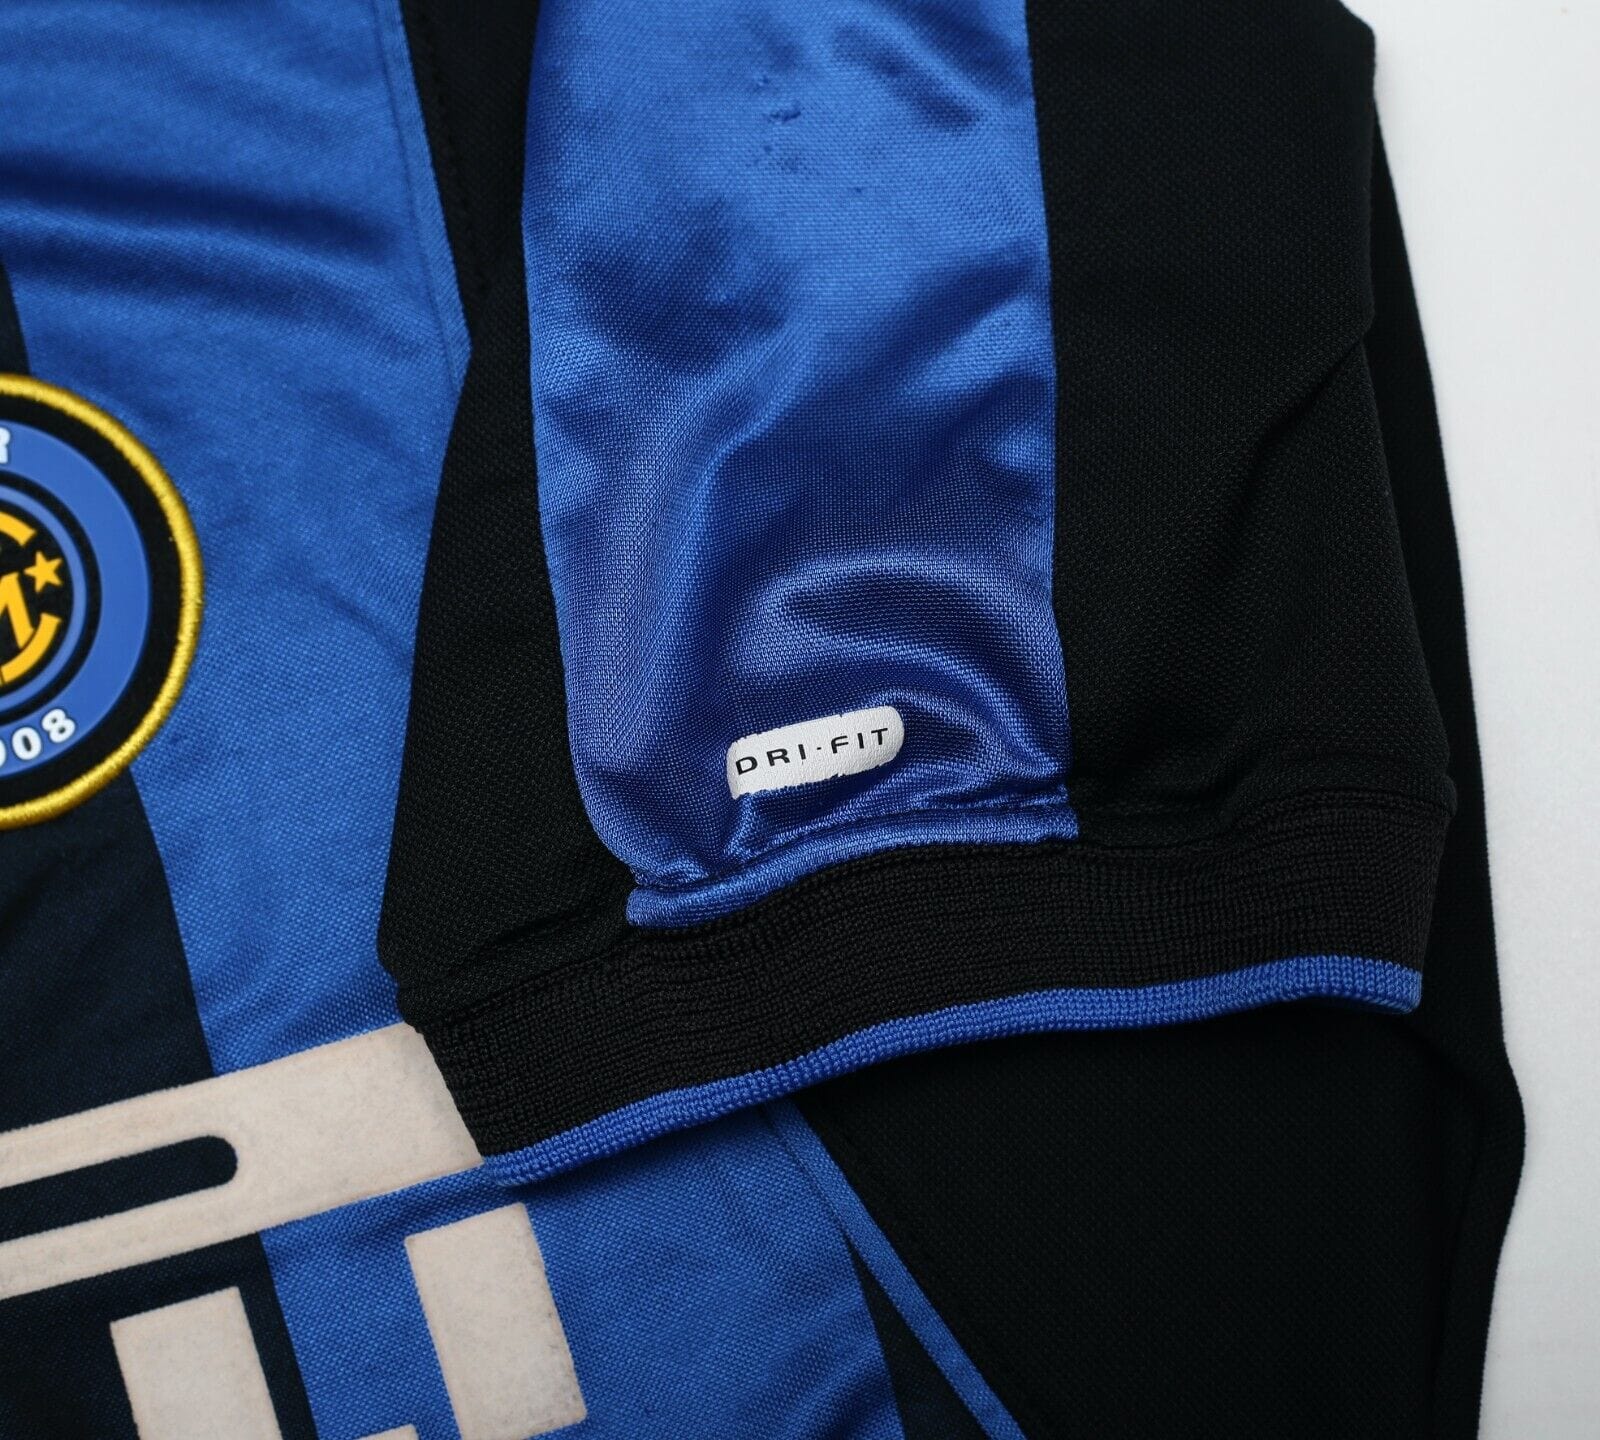 2000/01 VIERI #32 Inter Milan Vintage Nike Home Football Shirt Jersey (S/M)